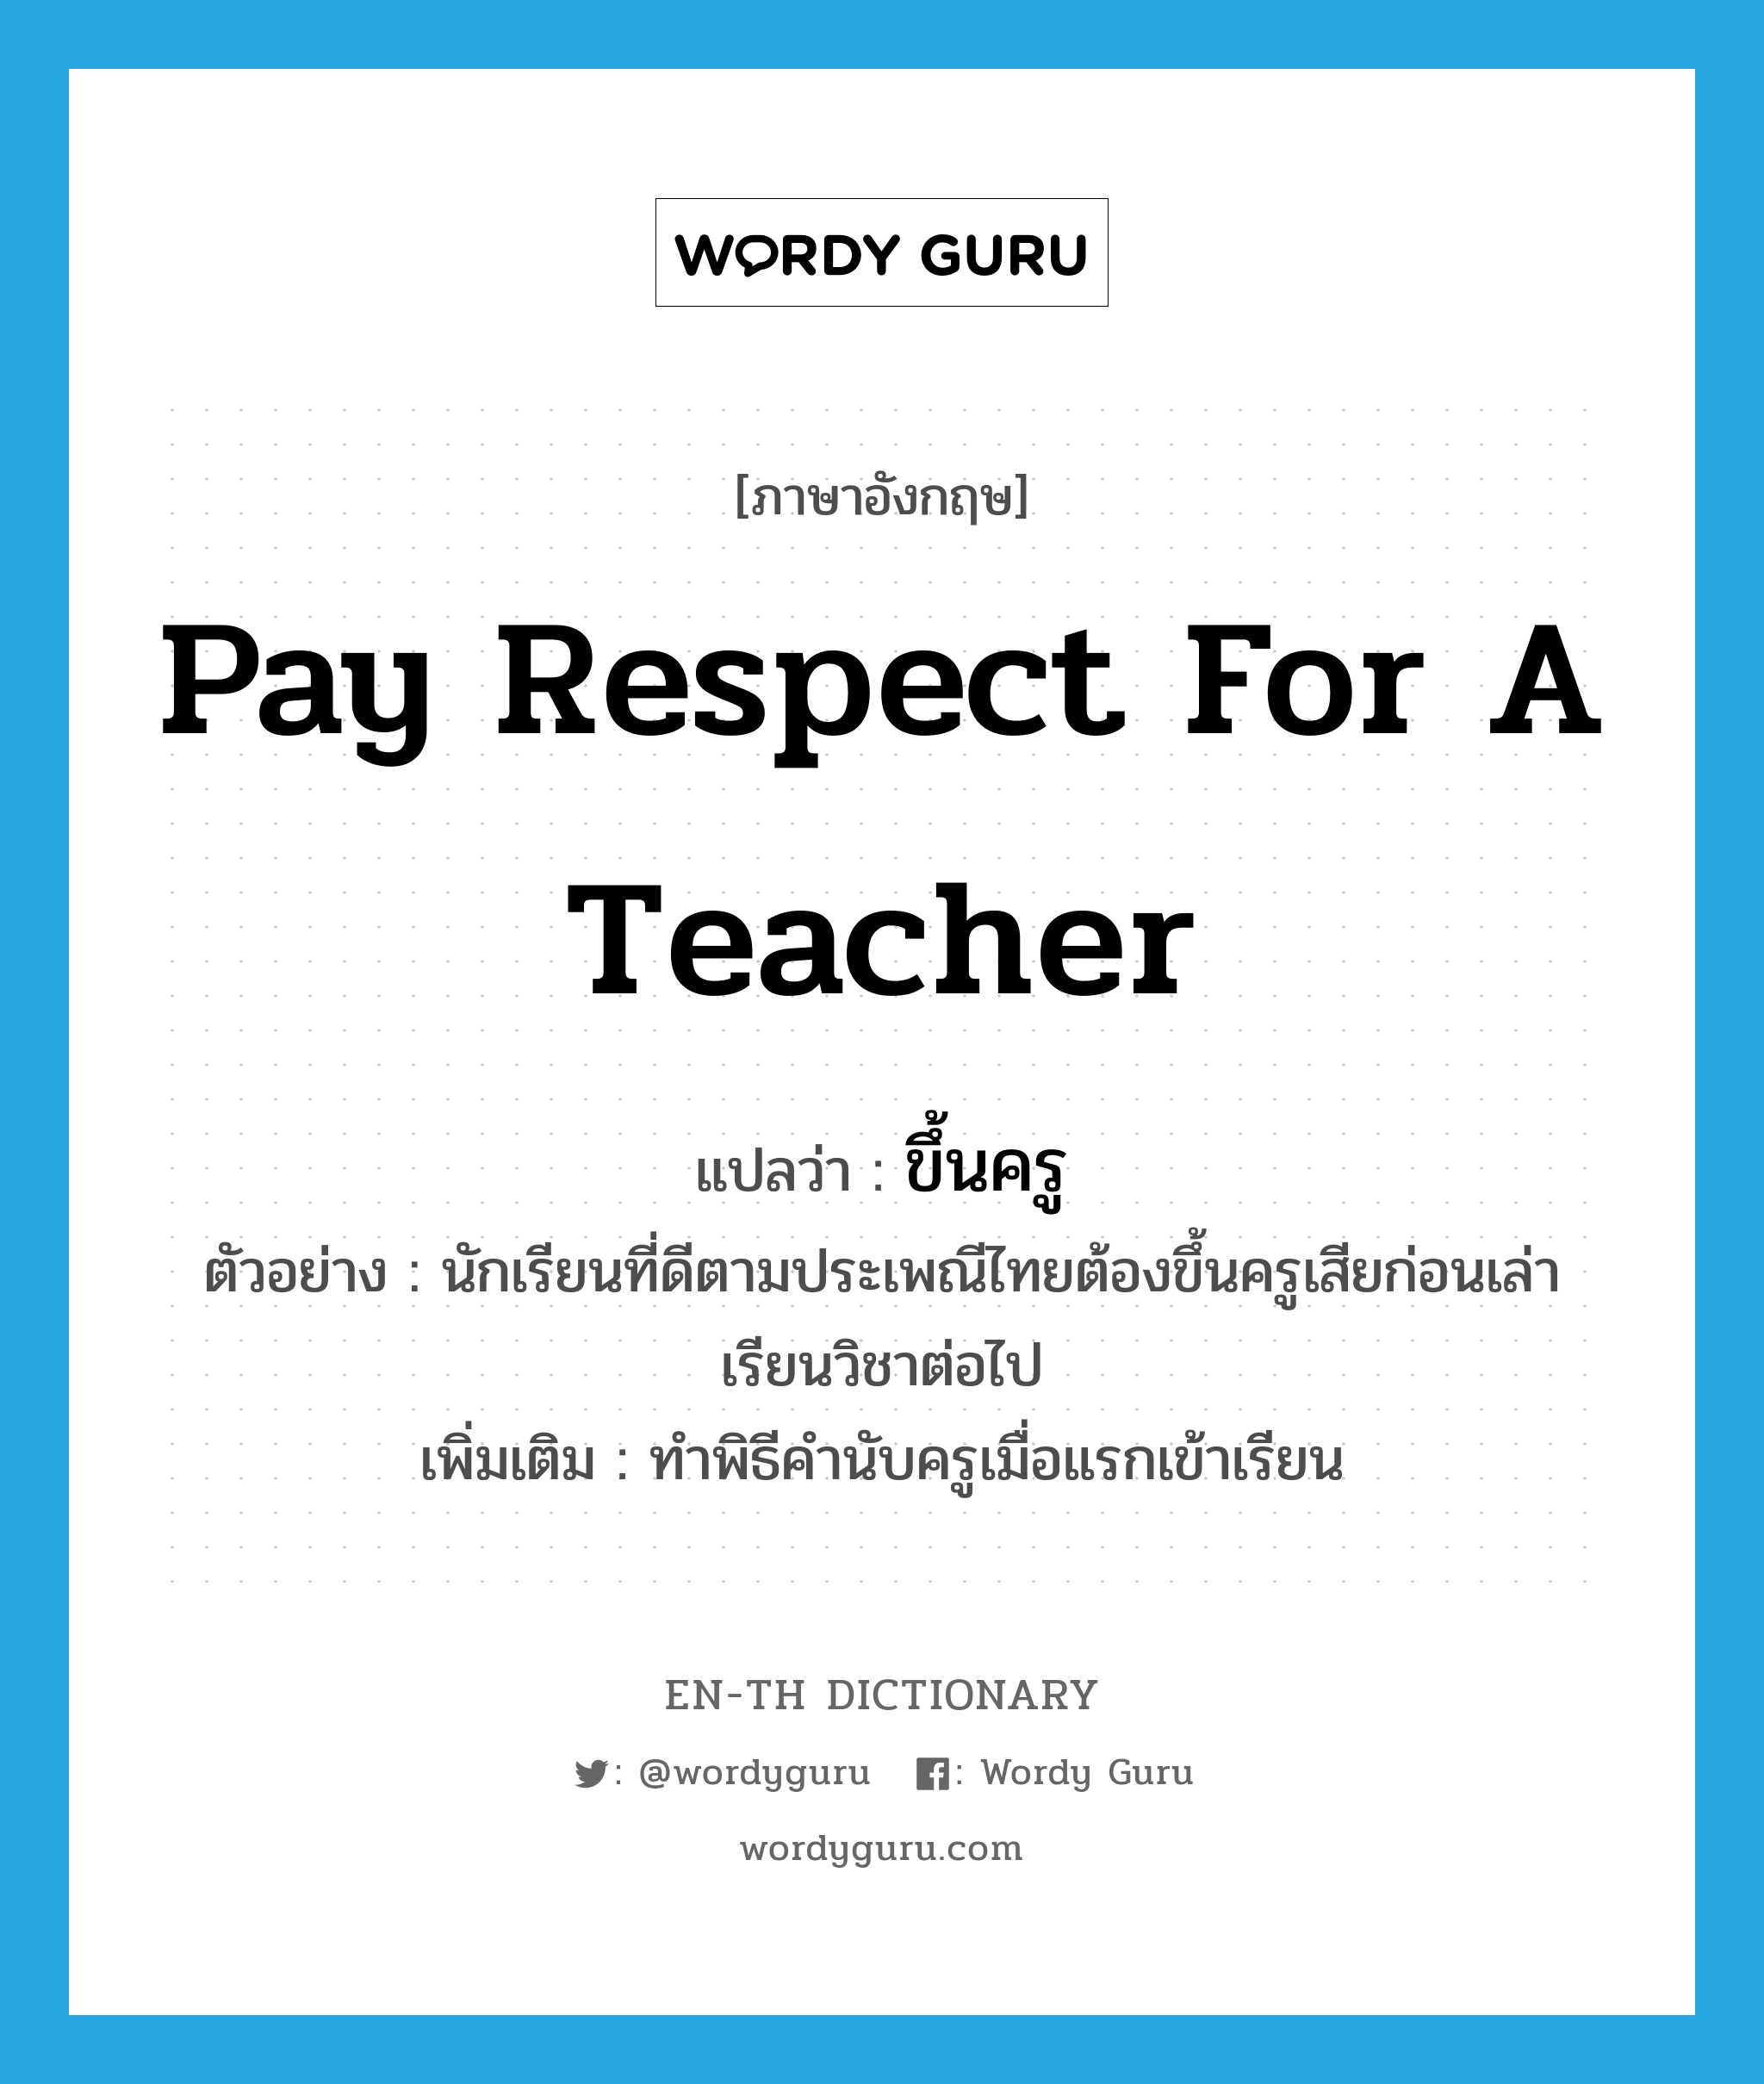 ขึ้นครู ภาษาอังกฤษ?, คำศัพท์ภาษาอังกฤษ ขึ้นครู แปลว่า pay respect for a teacher ประเภท V ตัวอย่าง นักเรียนที่ดีตามประเพณีไทยต้องขึ้นครูเสียก่อนเล่าเรียนวิชาต่อไป เพิ่มเติม ทำพิธีคำนับครูเมื่อแรกเข้าเรียน หมวด V